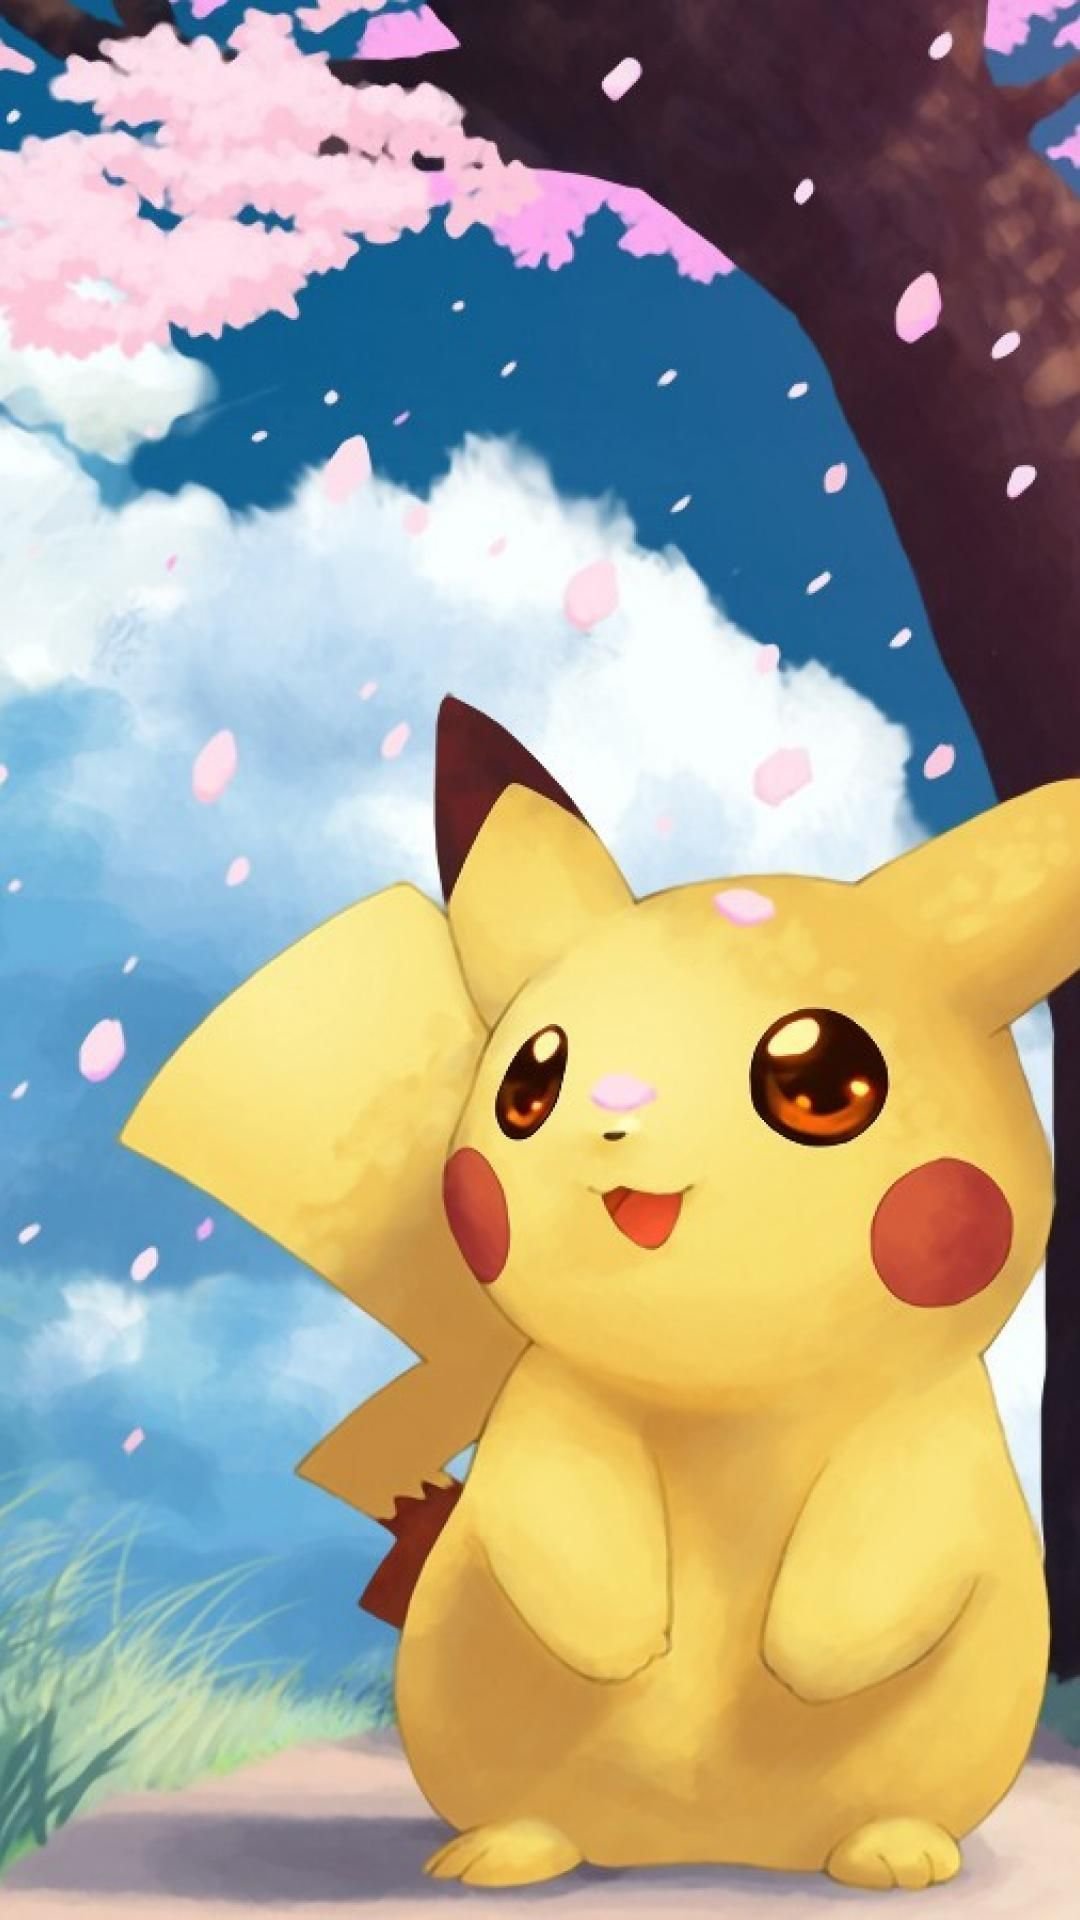 Pokémon Photo: Pikachu  Pikachu, Cute pokemon wallpaper, Pokemon